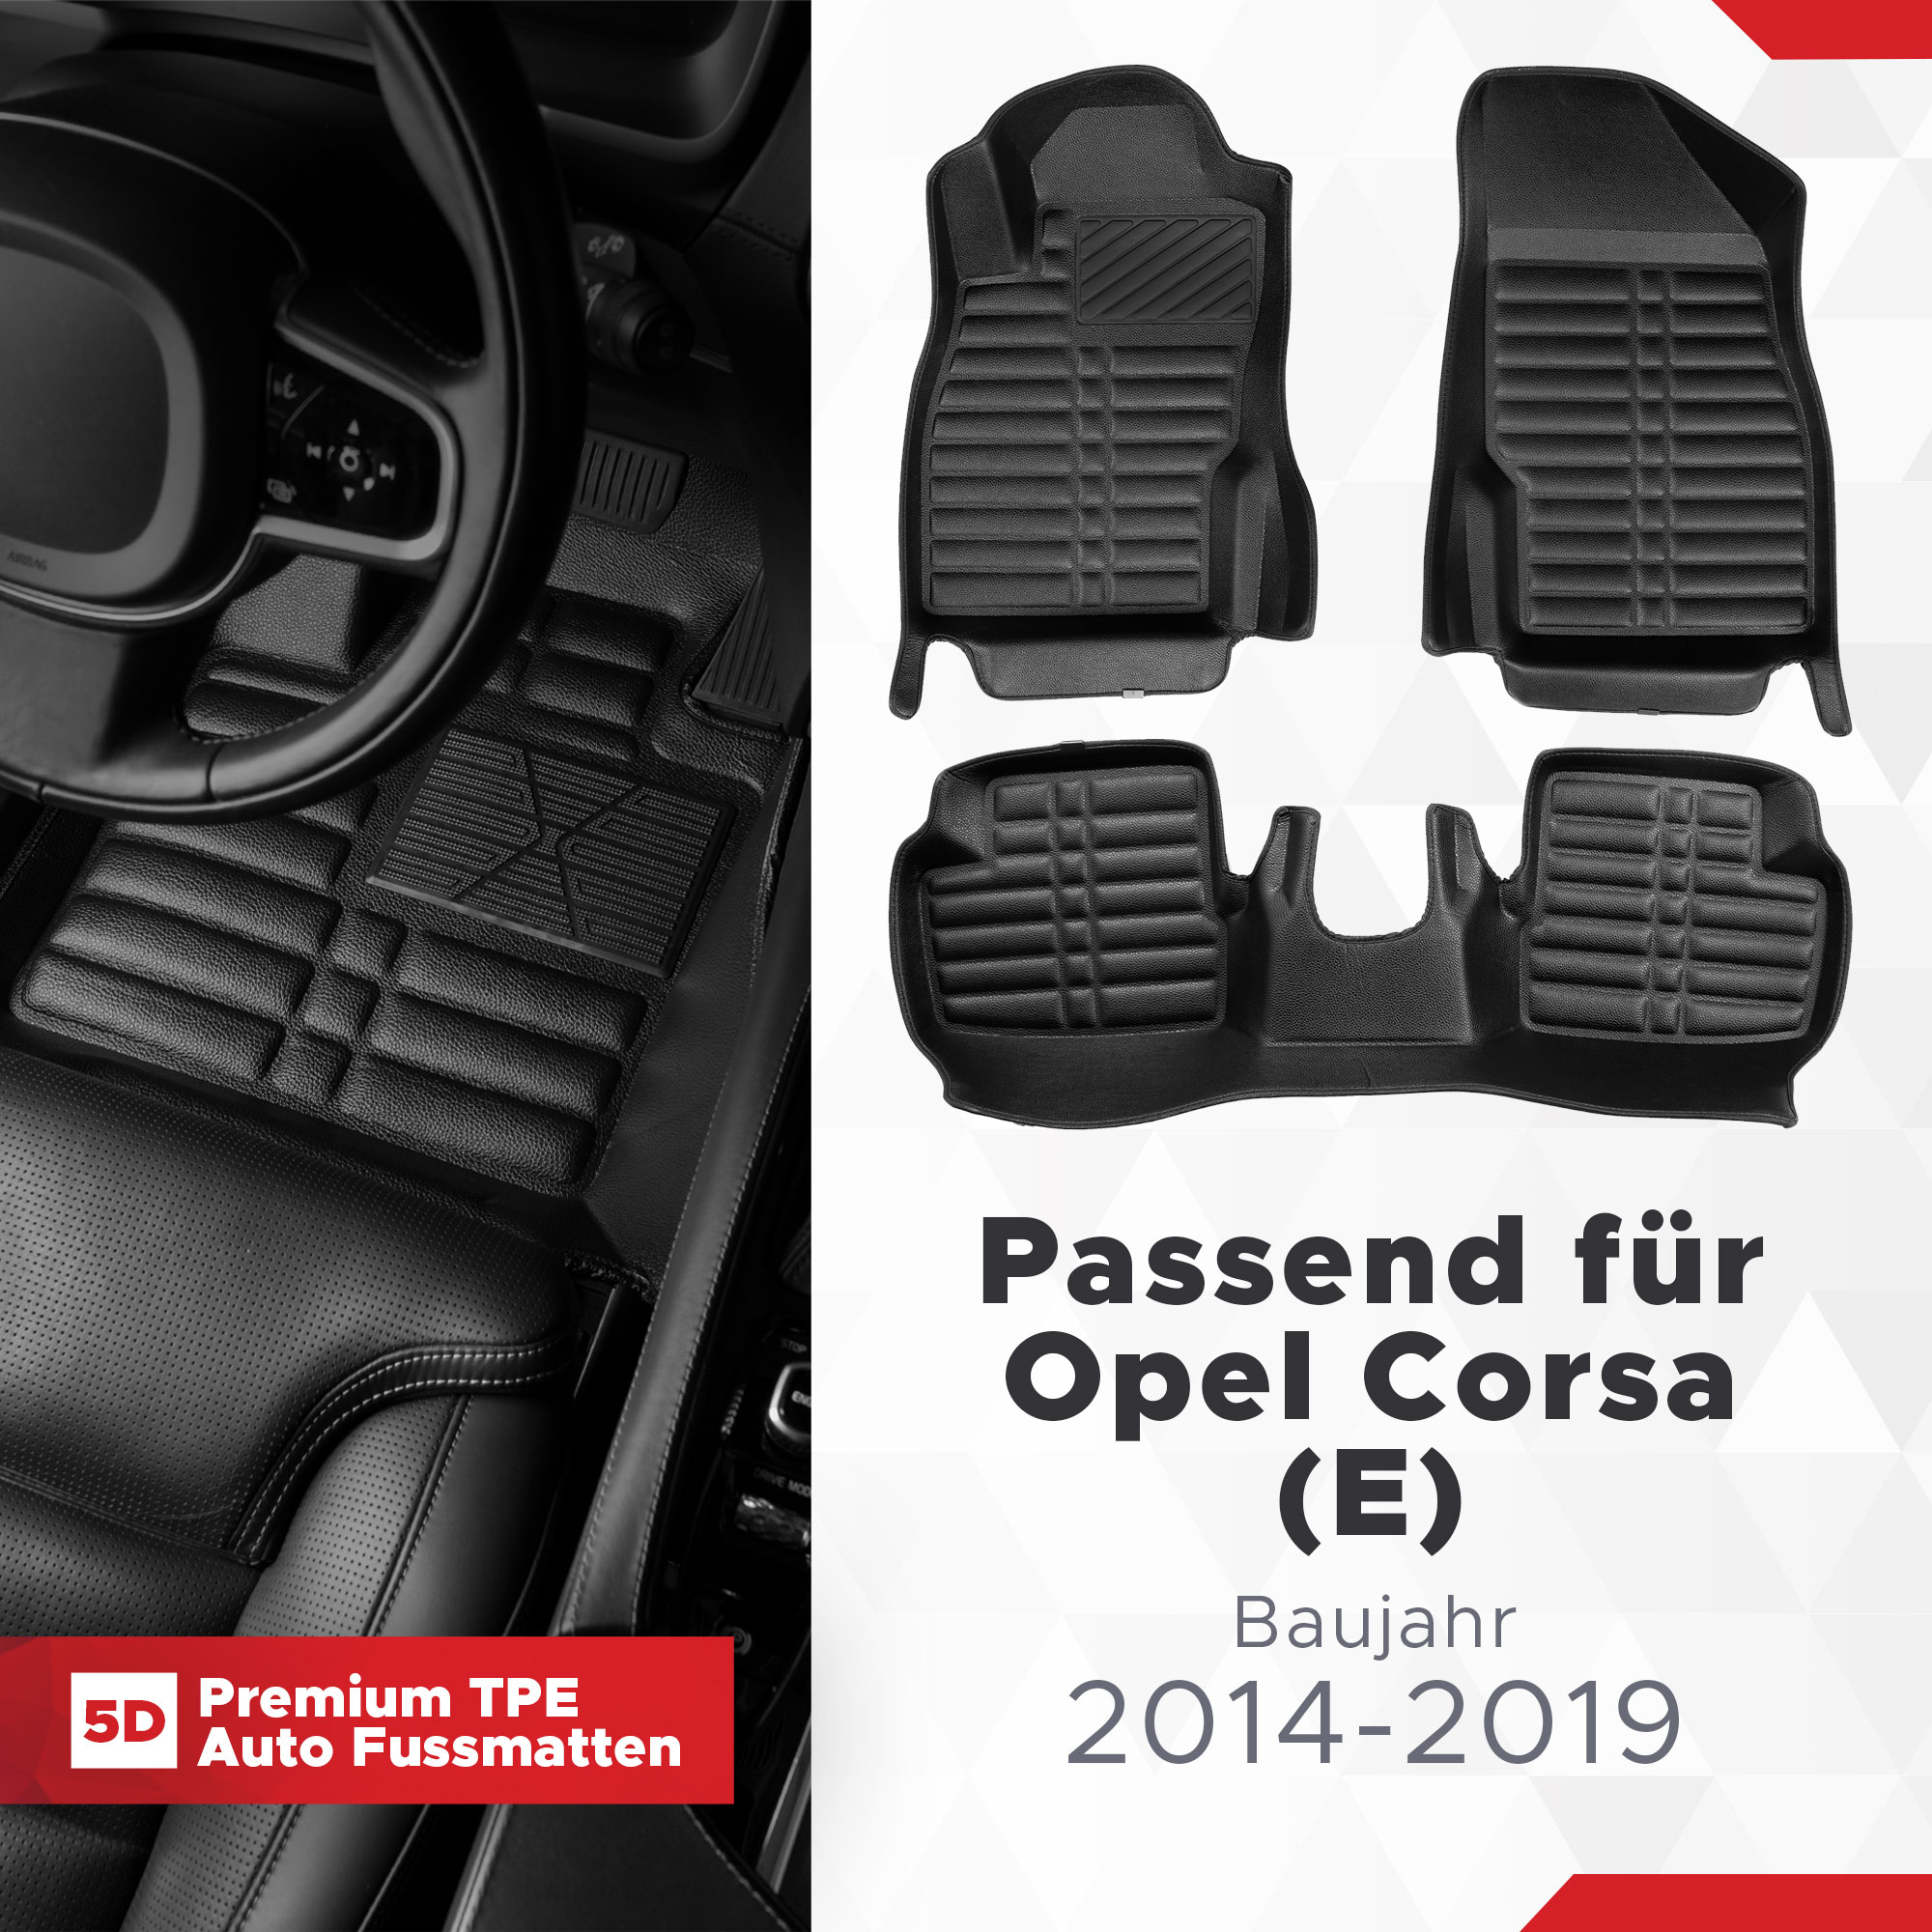 5D Opel Corsa (E) Fussmatten Bj 2014-2019 TPE